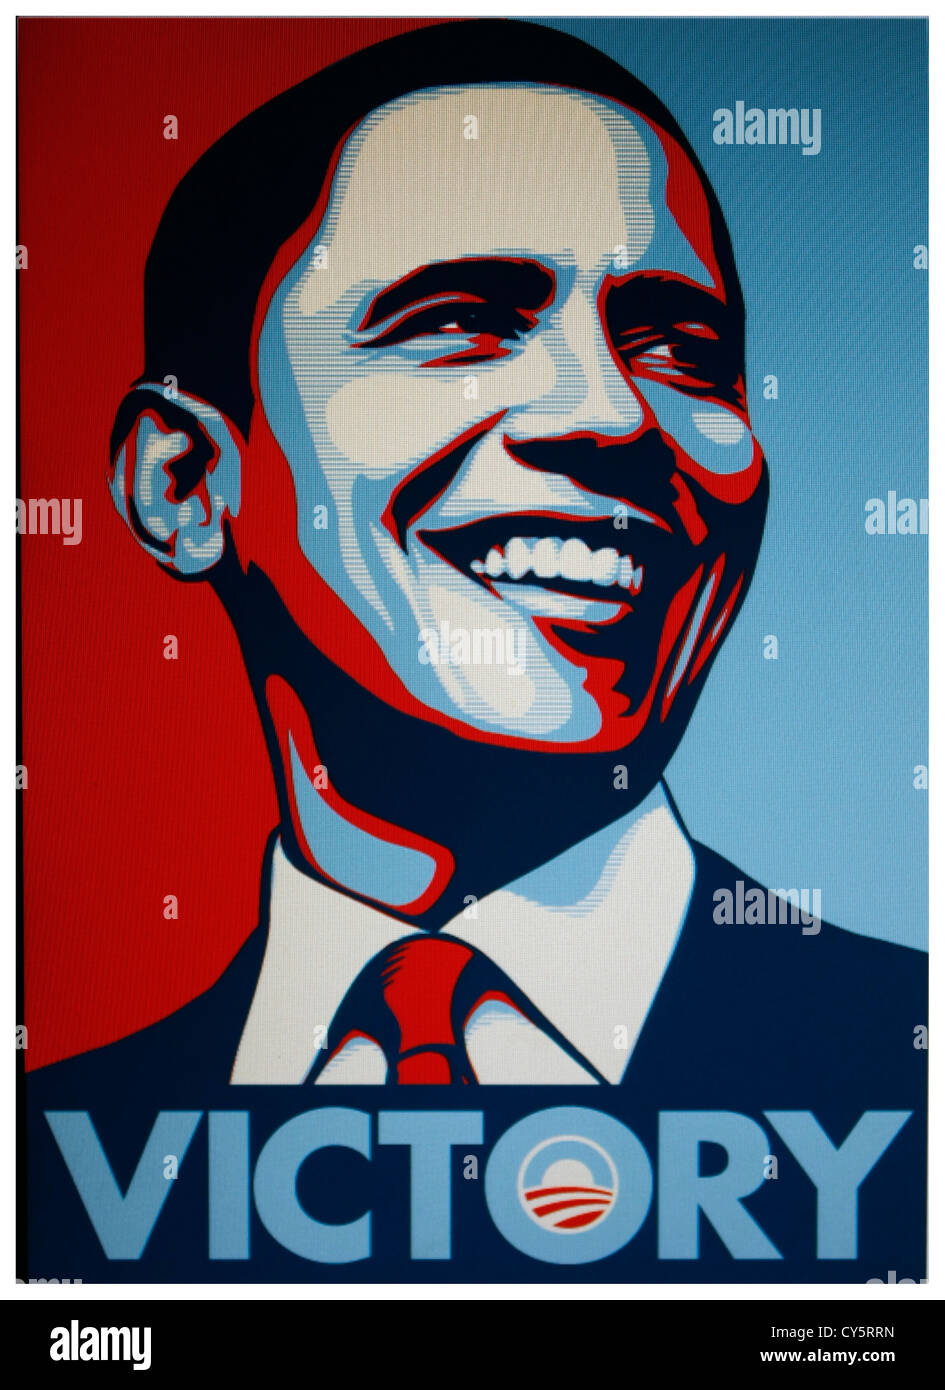 El Barack Obama 'Victoria' poster Foto de stock